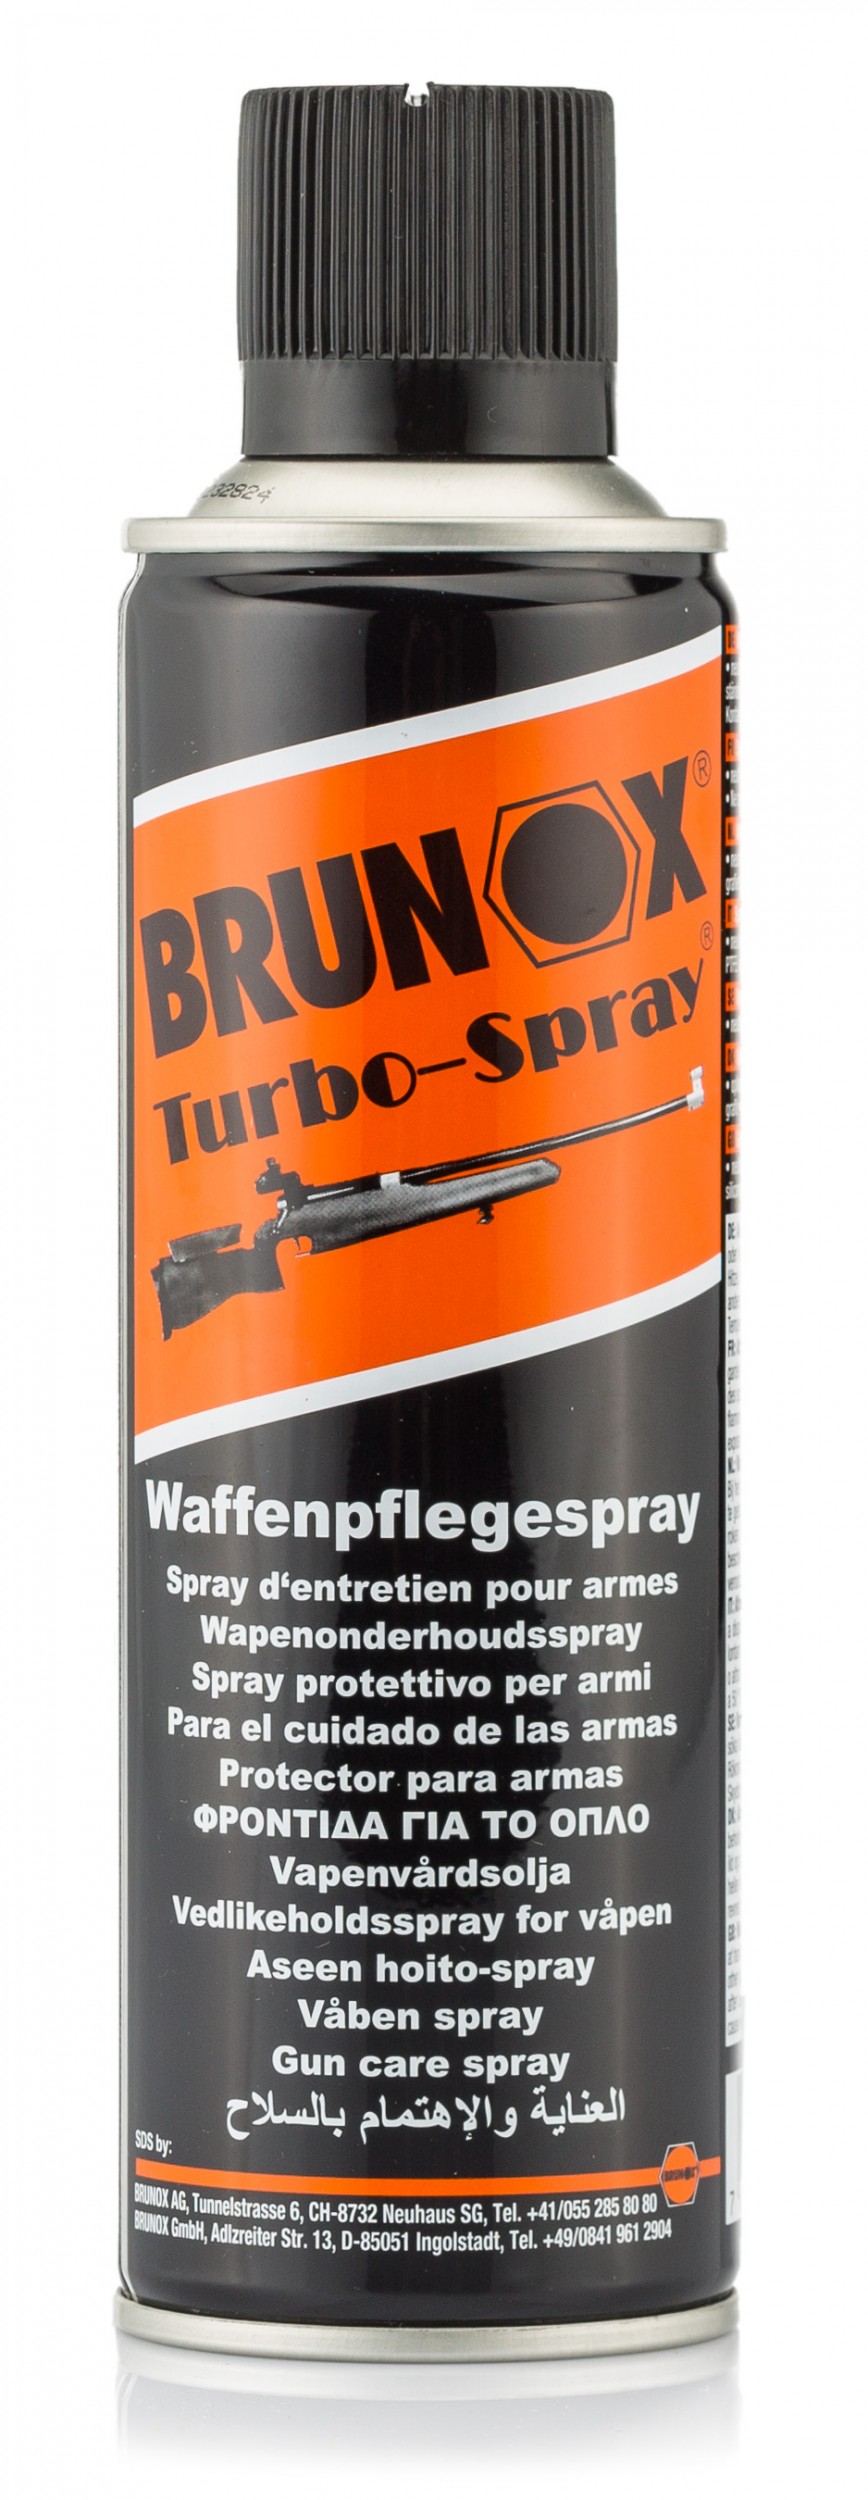 EN6525 Huile Brunox Turbo-Spray en bidon de 5 l et pulvérisateur - EN6525